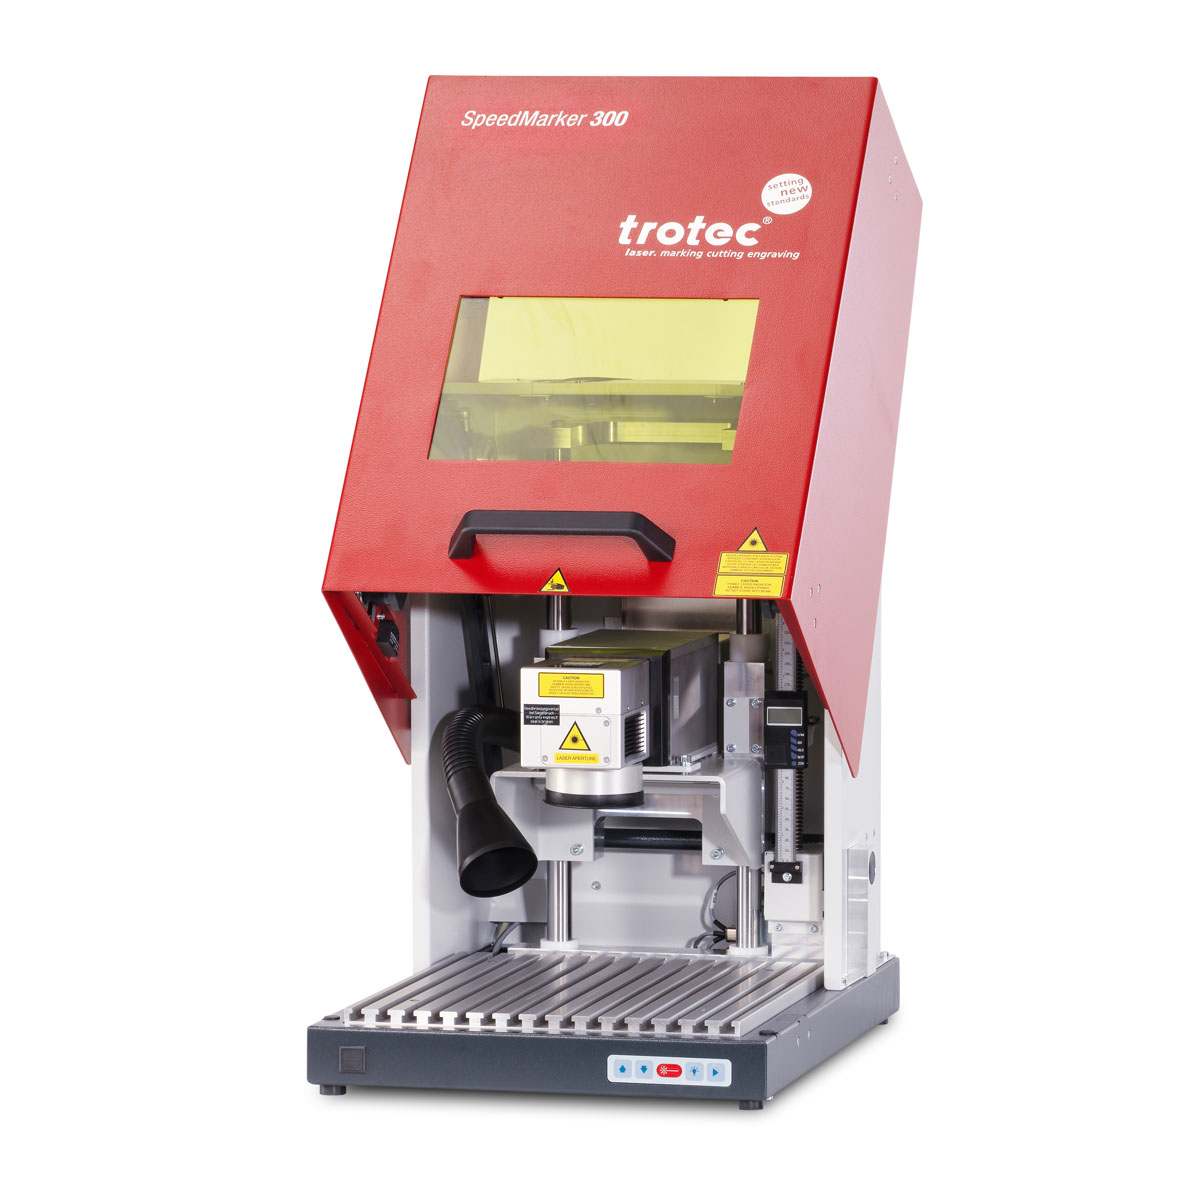 Trotec SpeedMarker 300 - industrial laser for marking metals and plastics